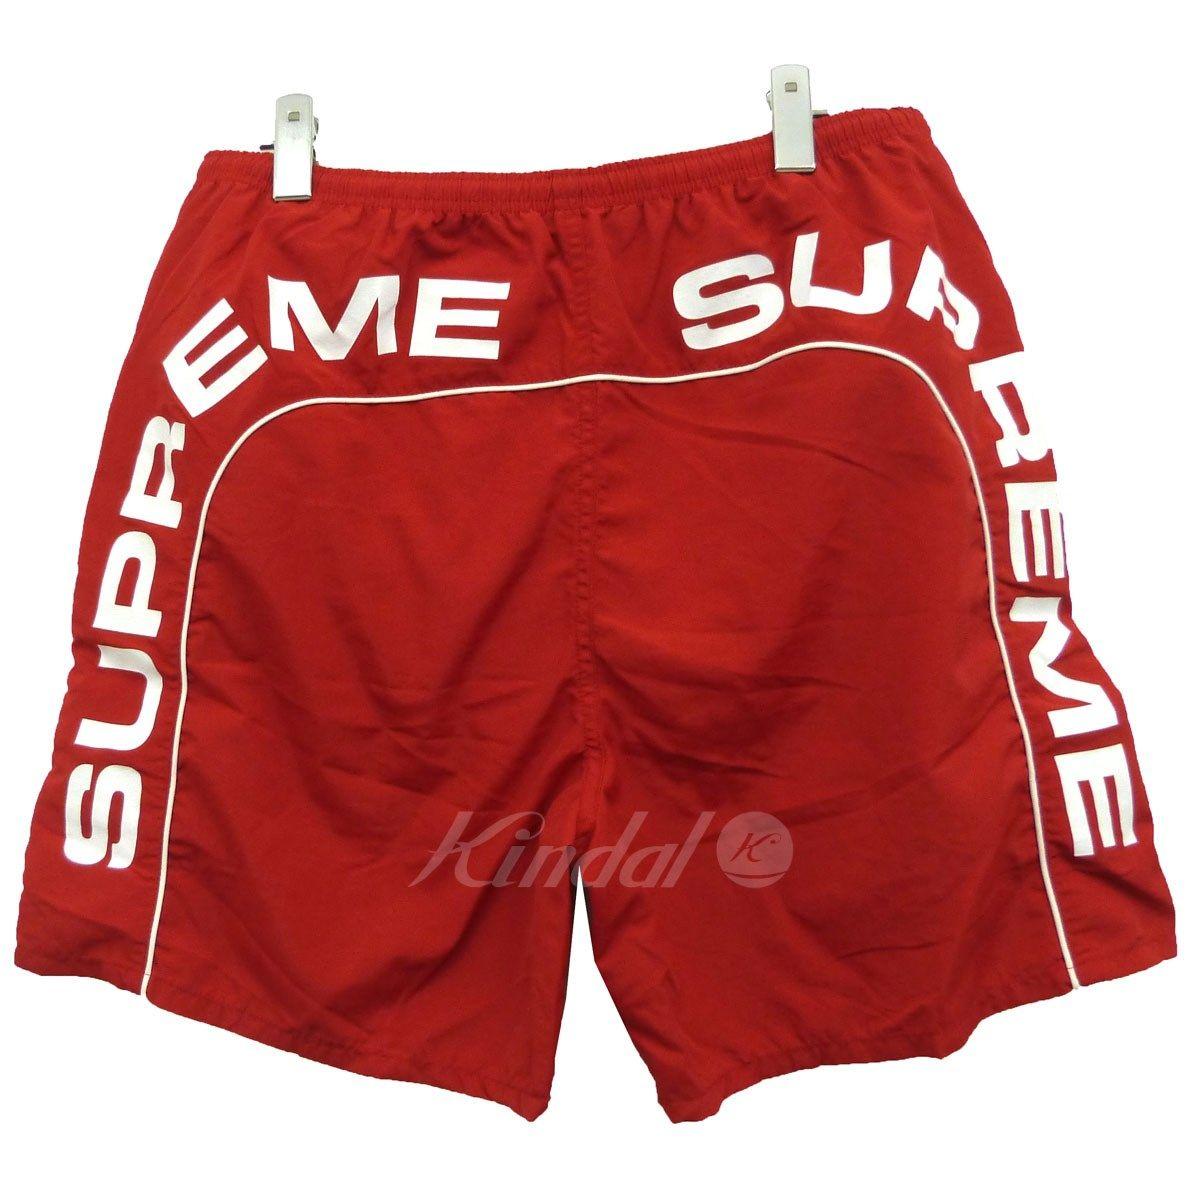 Shorts Logo - SUPREME 18SS Arc Logo Water Short arch logo swimming shorts red size: M (シュプリーム)